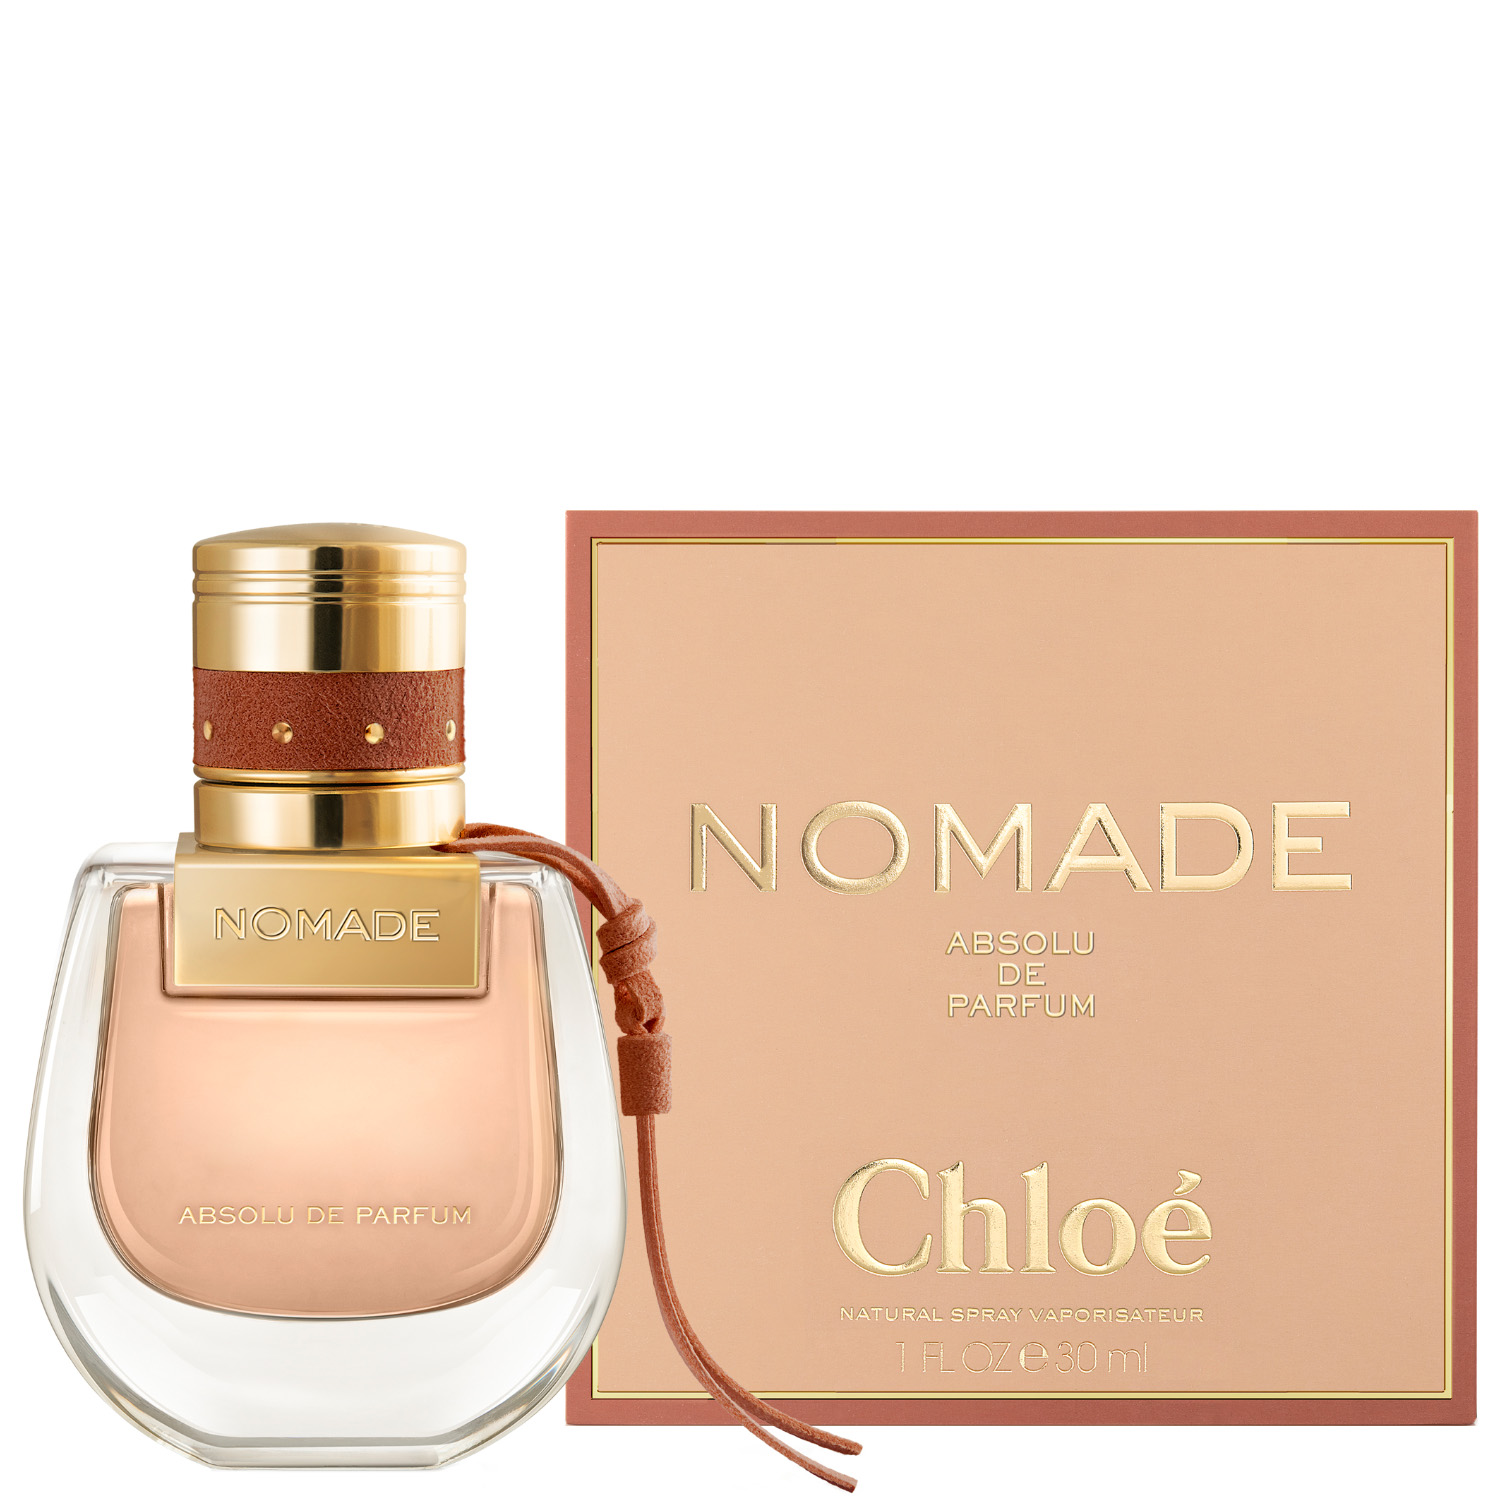 Chloé Nomade Absolue de Parfum Eau de Parfum 30ml